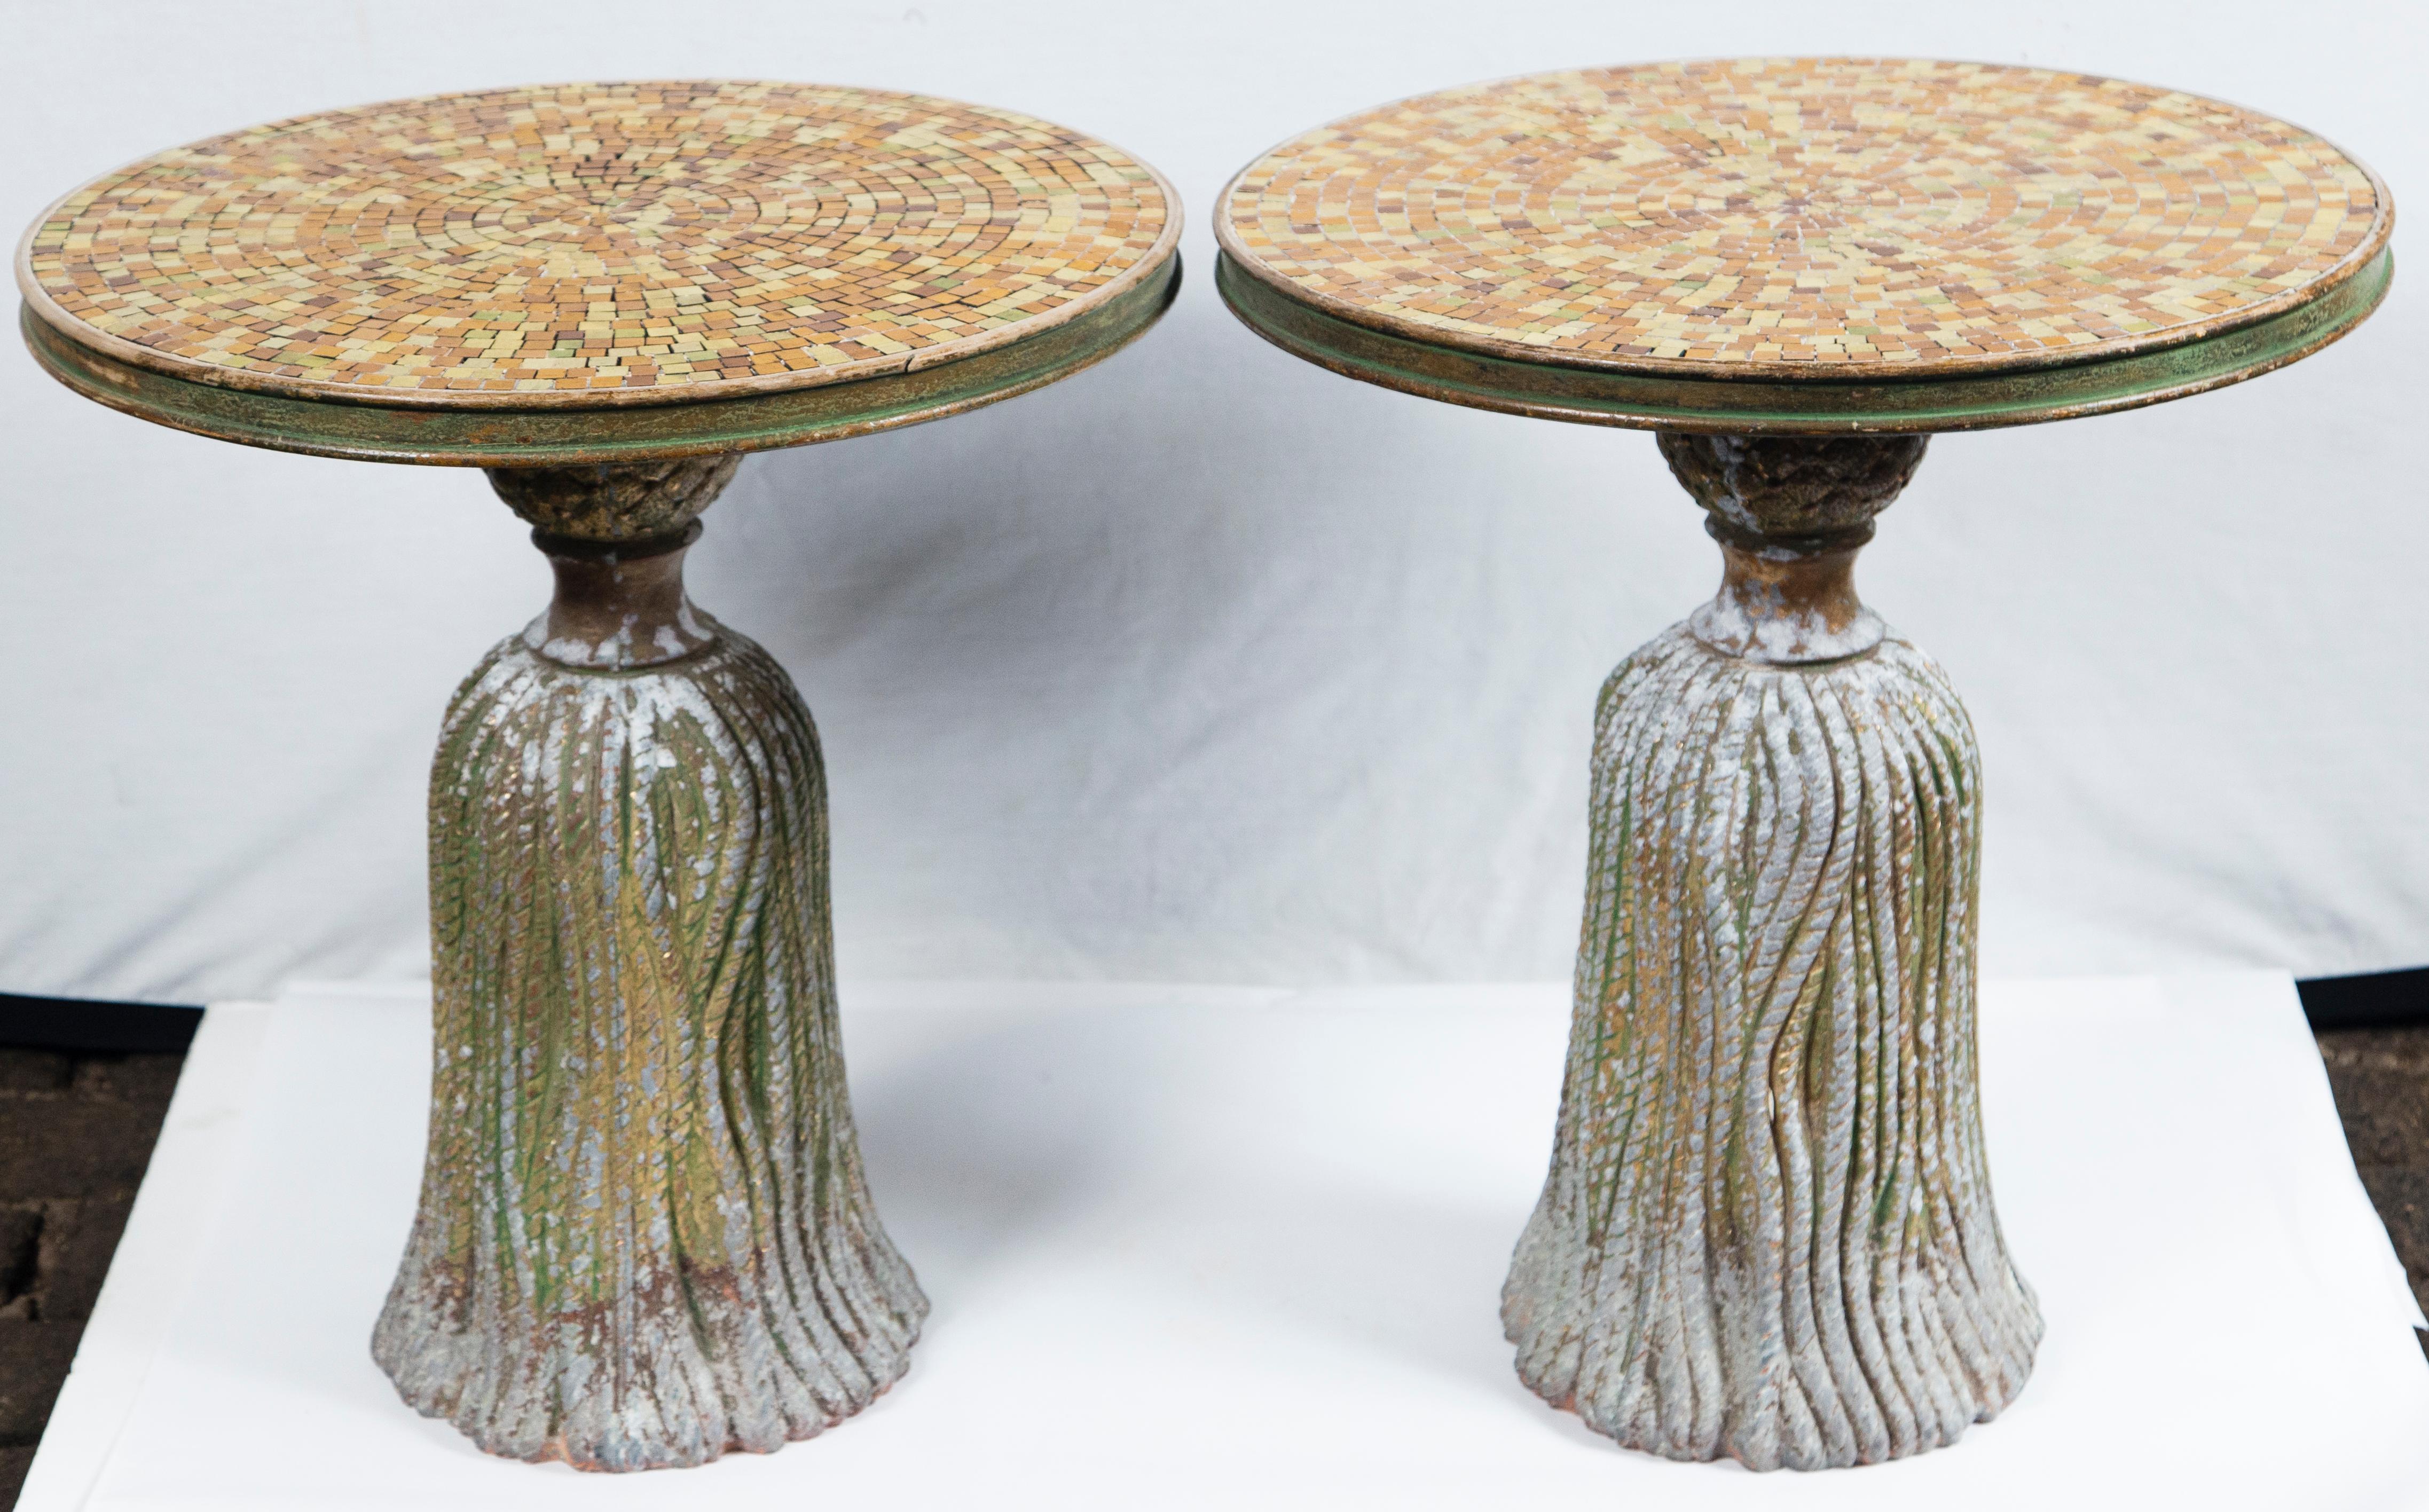 Paire de tables à glands en mosaïque de céramique dorée. Les bases en forme de glands en fonte sont remplies de ciment pour plus de légèreté. Les plateaux en mosaïque sont bordés de bois.